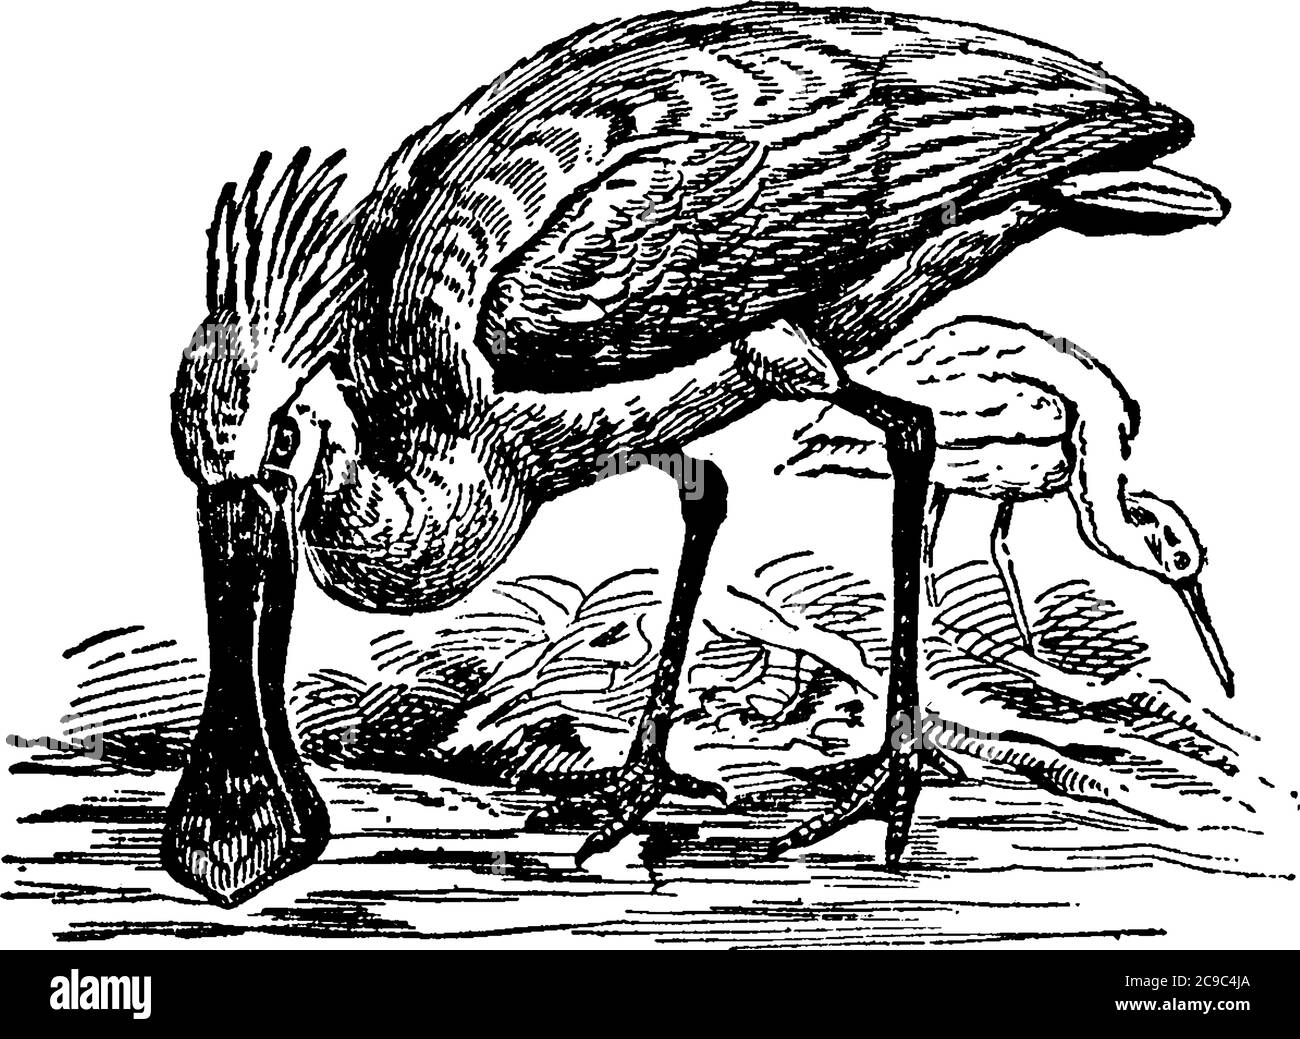 Löffelvögel sind eine Gattung, Platalea, von großen, langbeinigen Watvögel, gehören zur Familie der Reiher (Ardeidae), Ordnung Grallatores, aus der Form der Stock Vektor